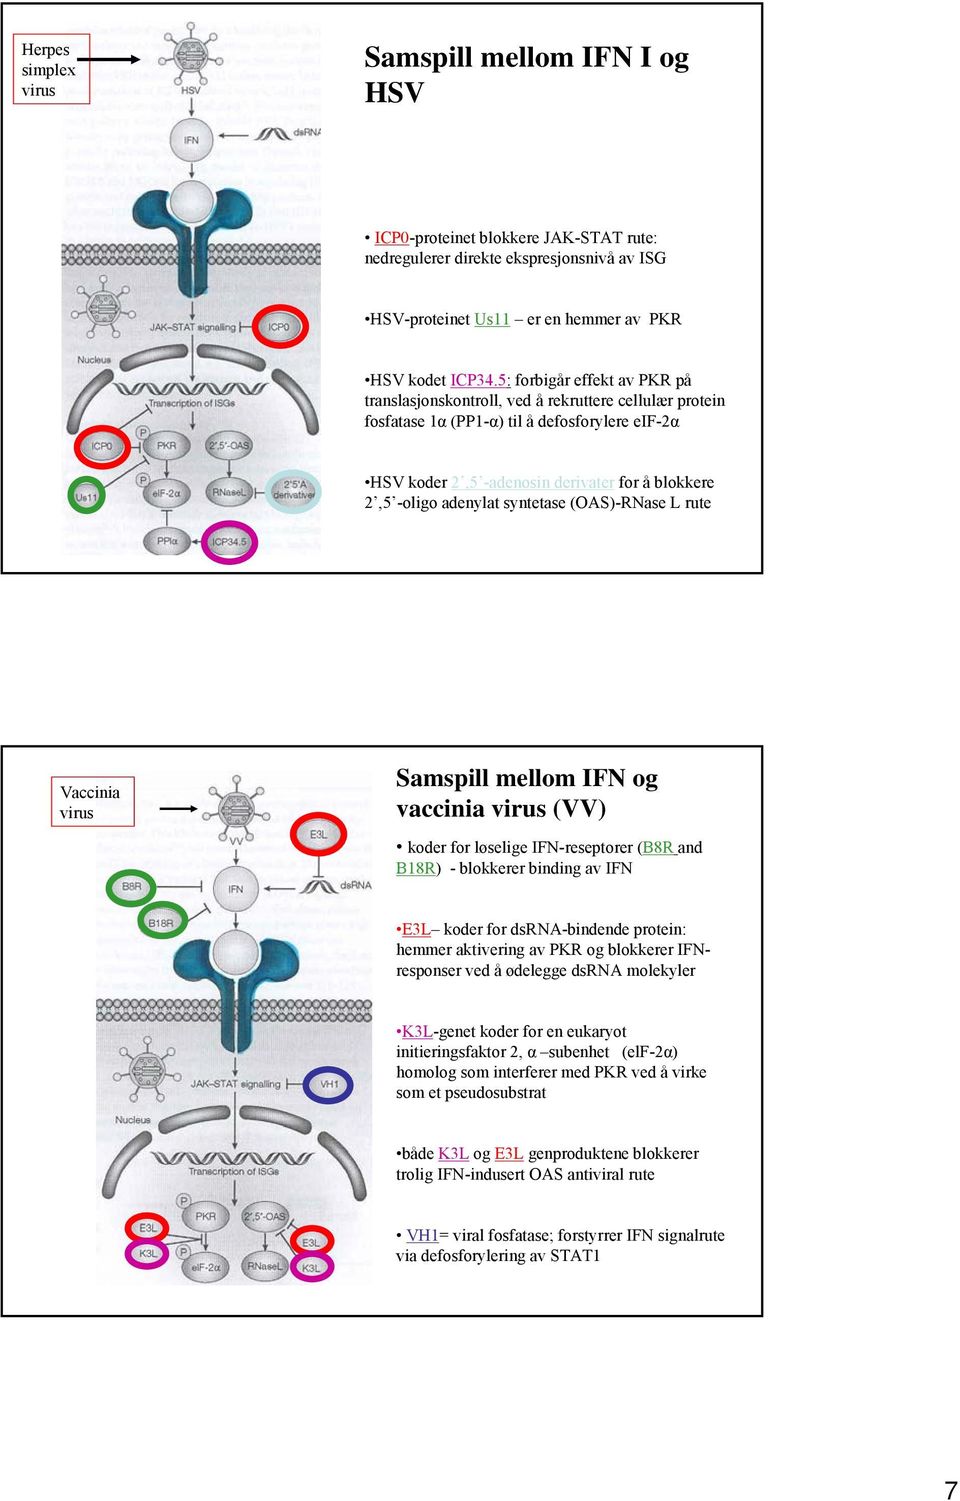 adenylat syntetase (OAS)-RNase L rute Vaccinia virus Samspill mellom IFN og vaccinia virus (VV) koder for løselige IFN-reseptorer (B8R and B18R) - blokkerer binding av IFN E3L koder for